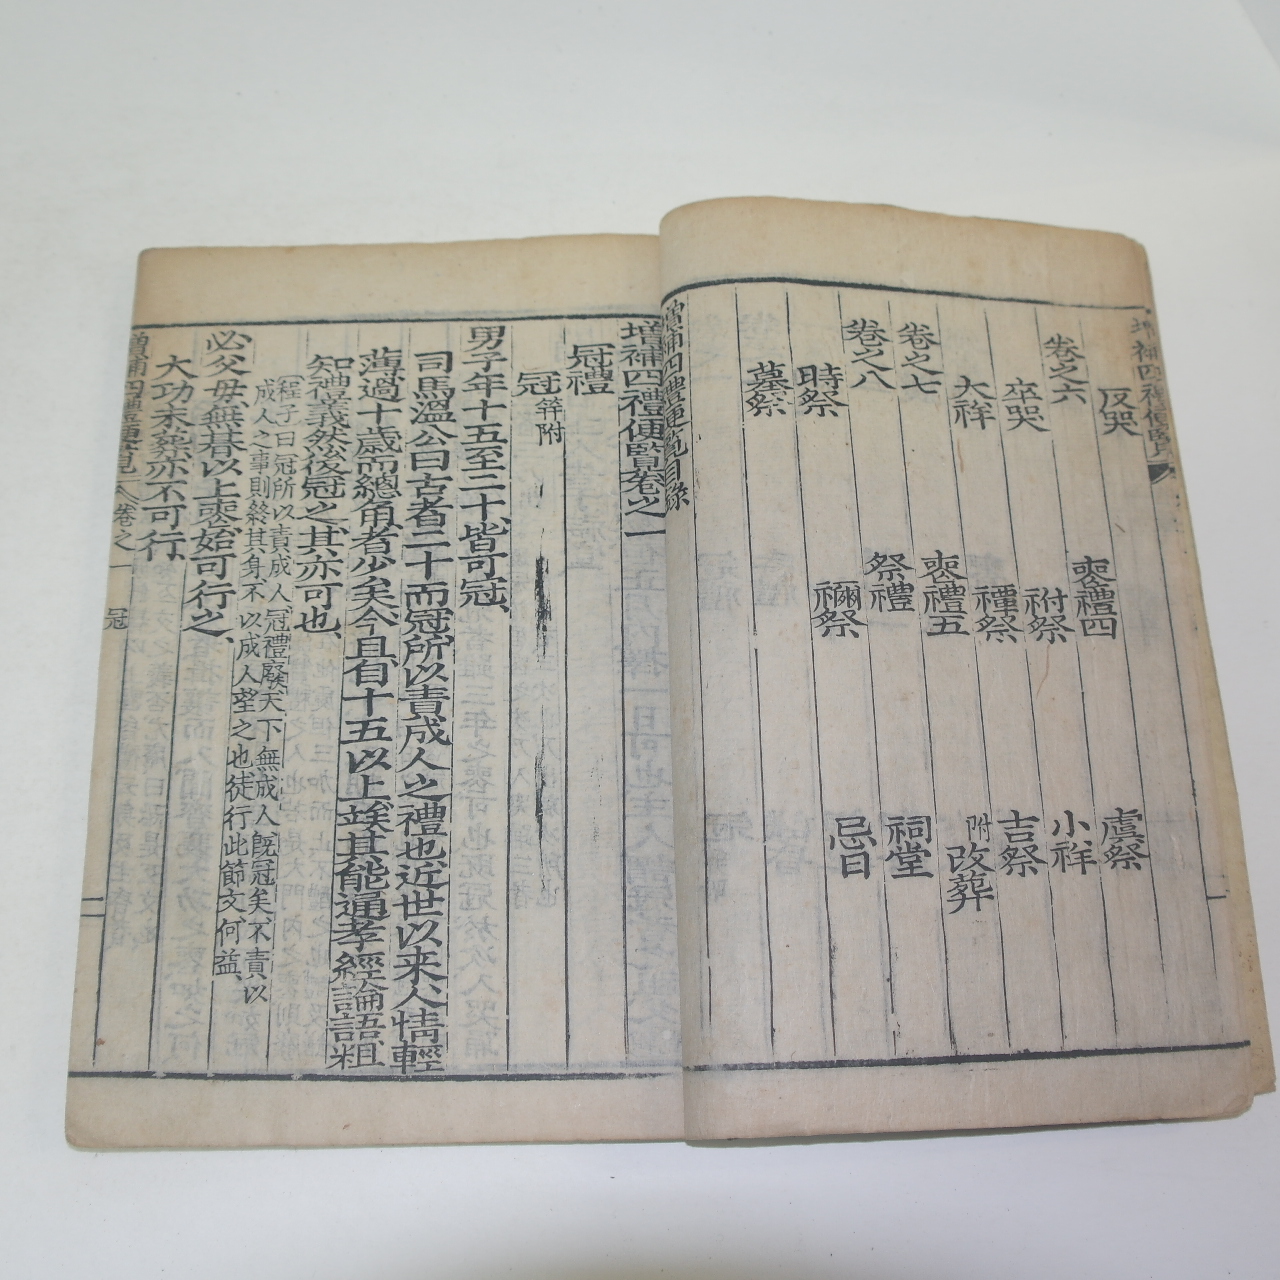 1900년(光武庚子) 목판본 사례편람(四禮便覽)8권4책완질